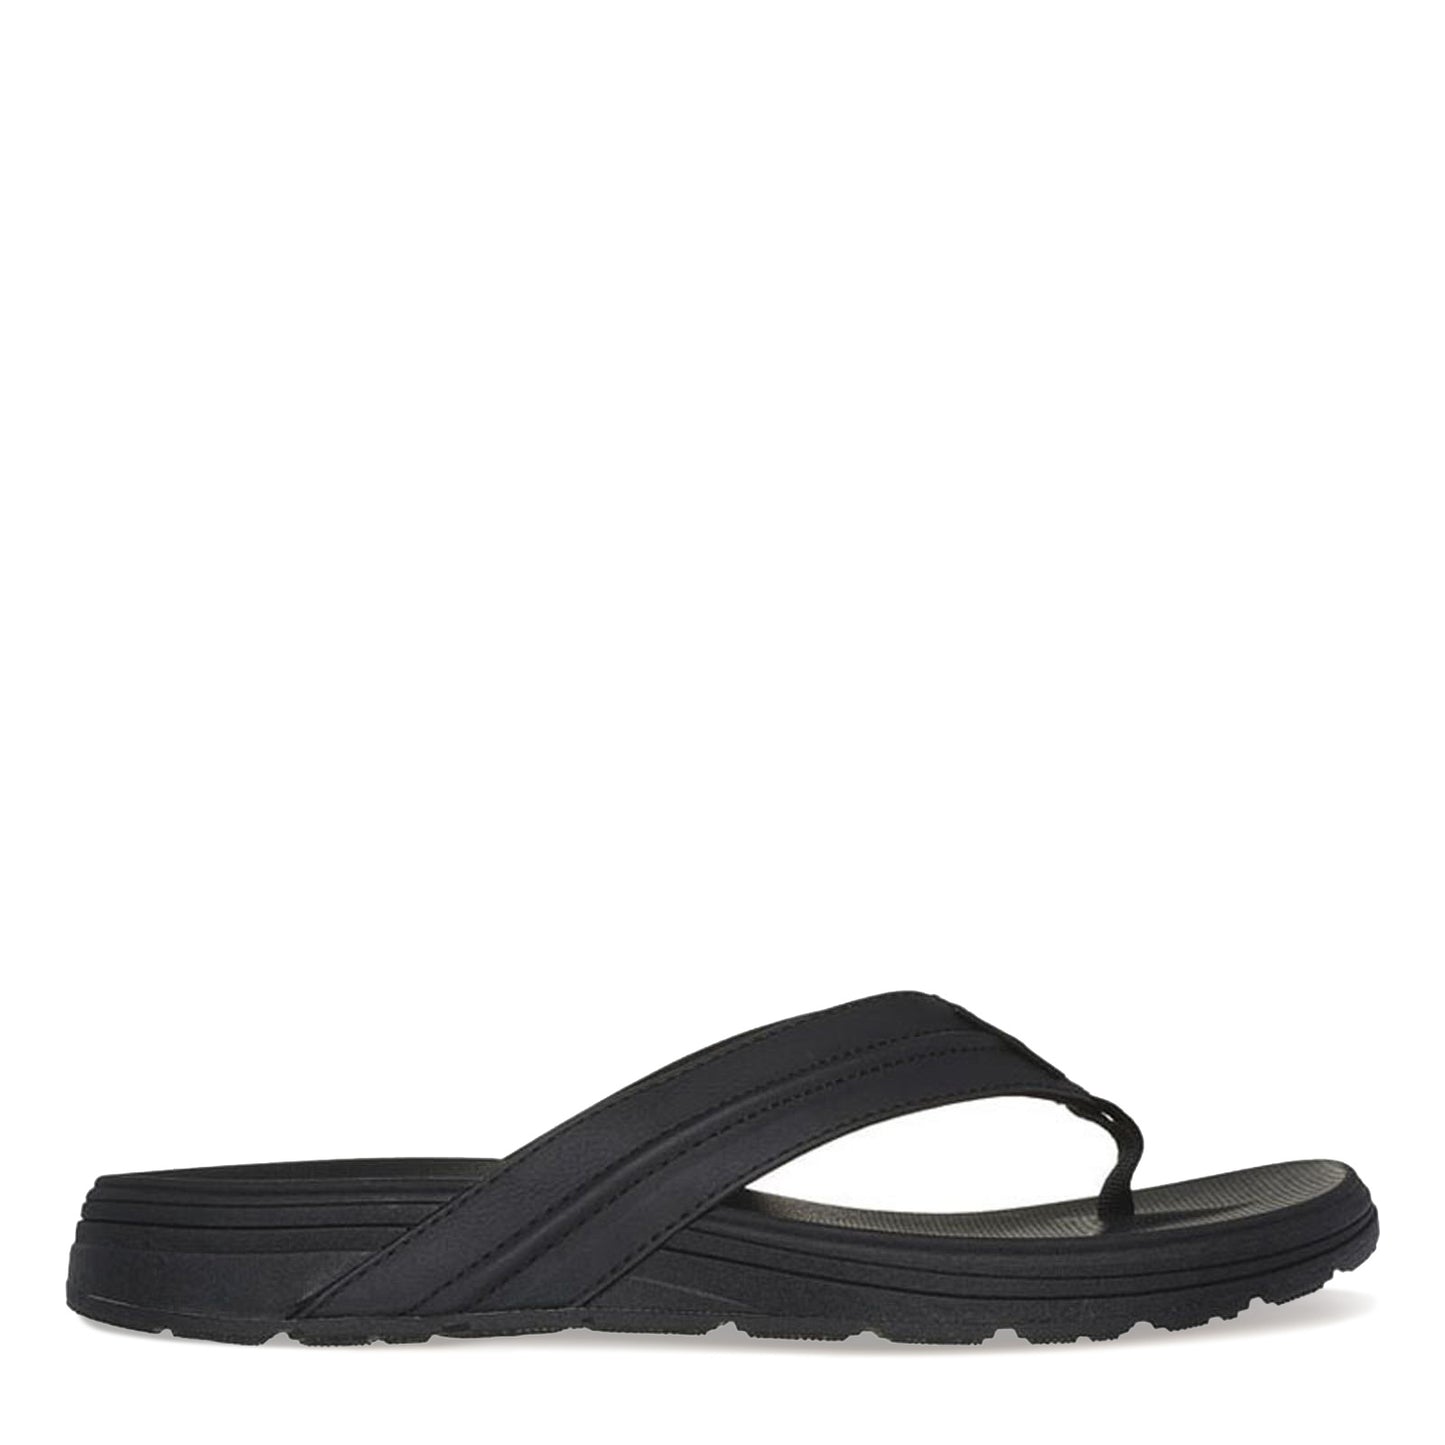 Peltz Shoes  Men's Skechers Relaxed Fit: Supreme - Bosnia Sandal Black 205111-BLK